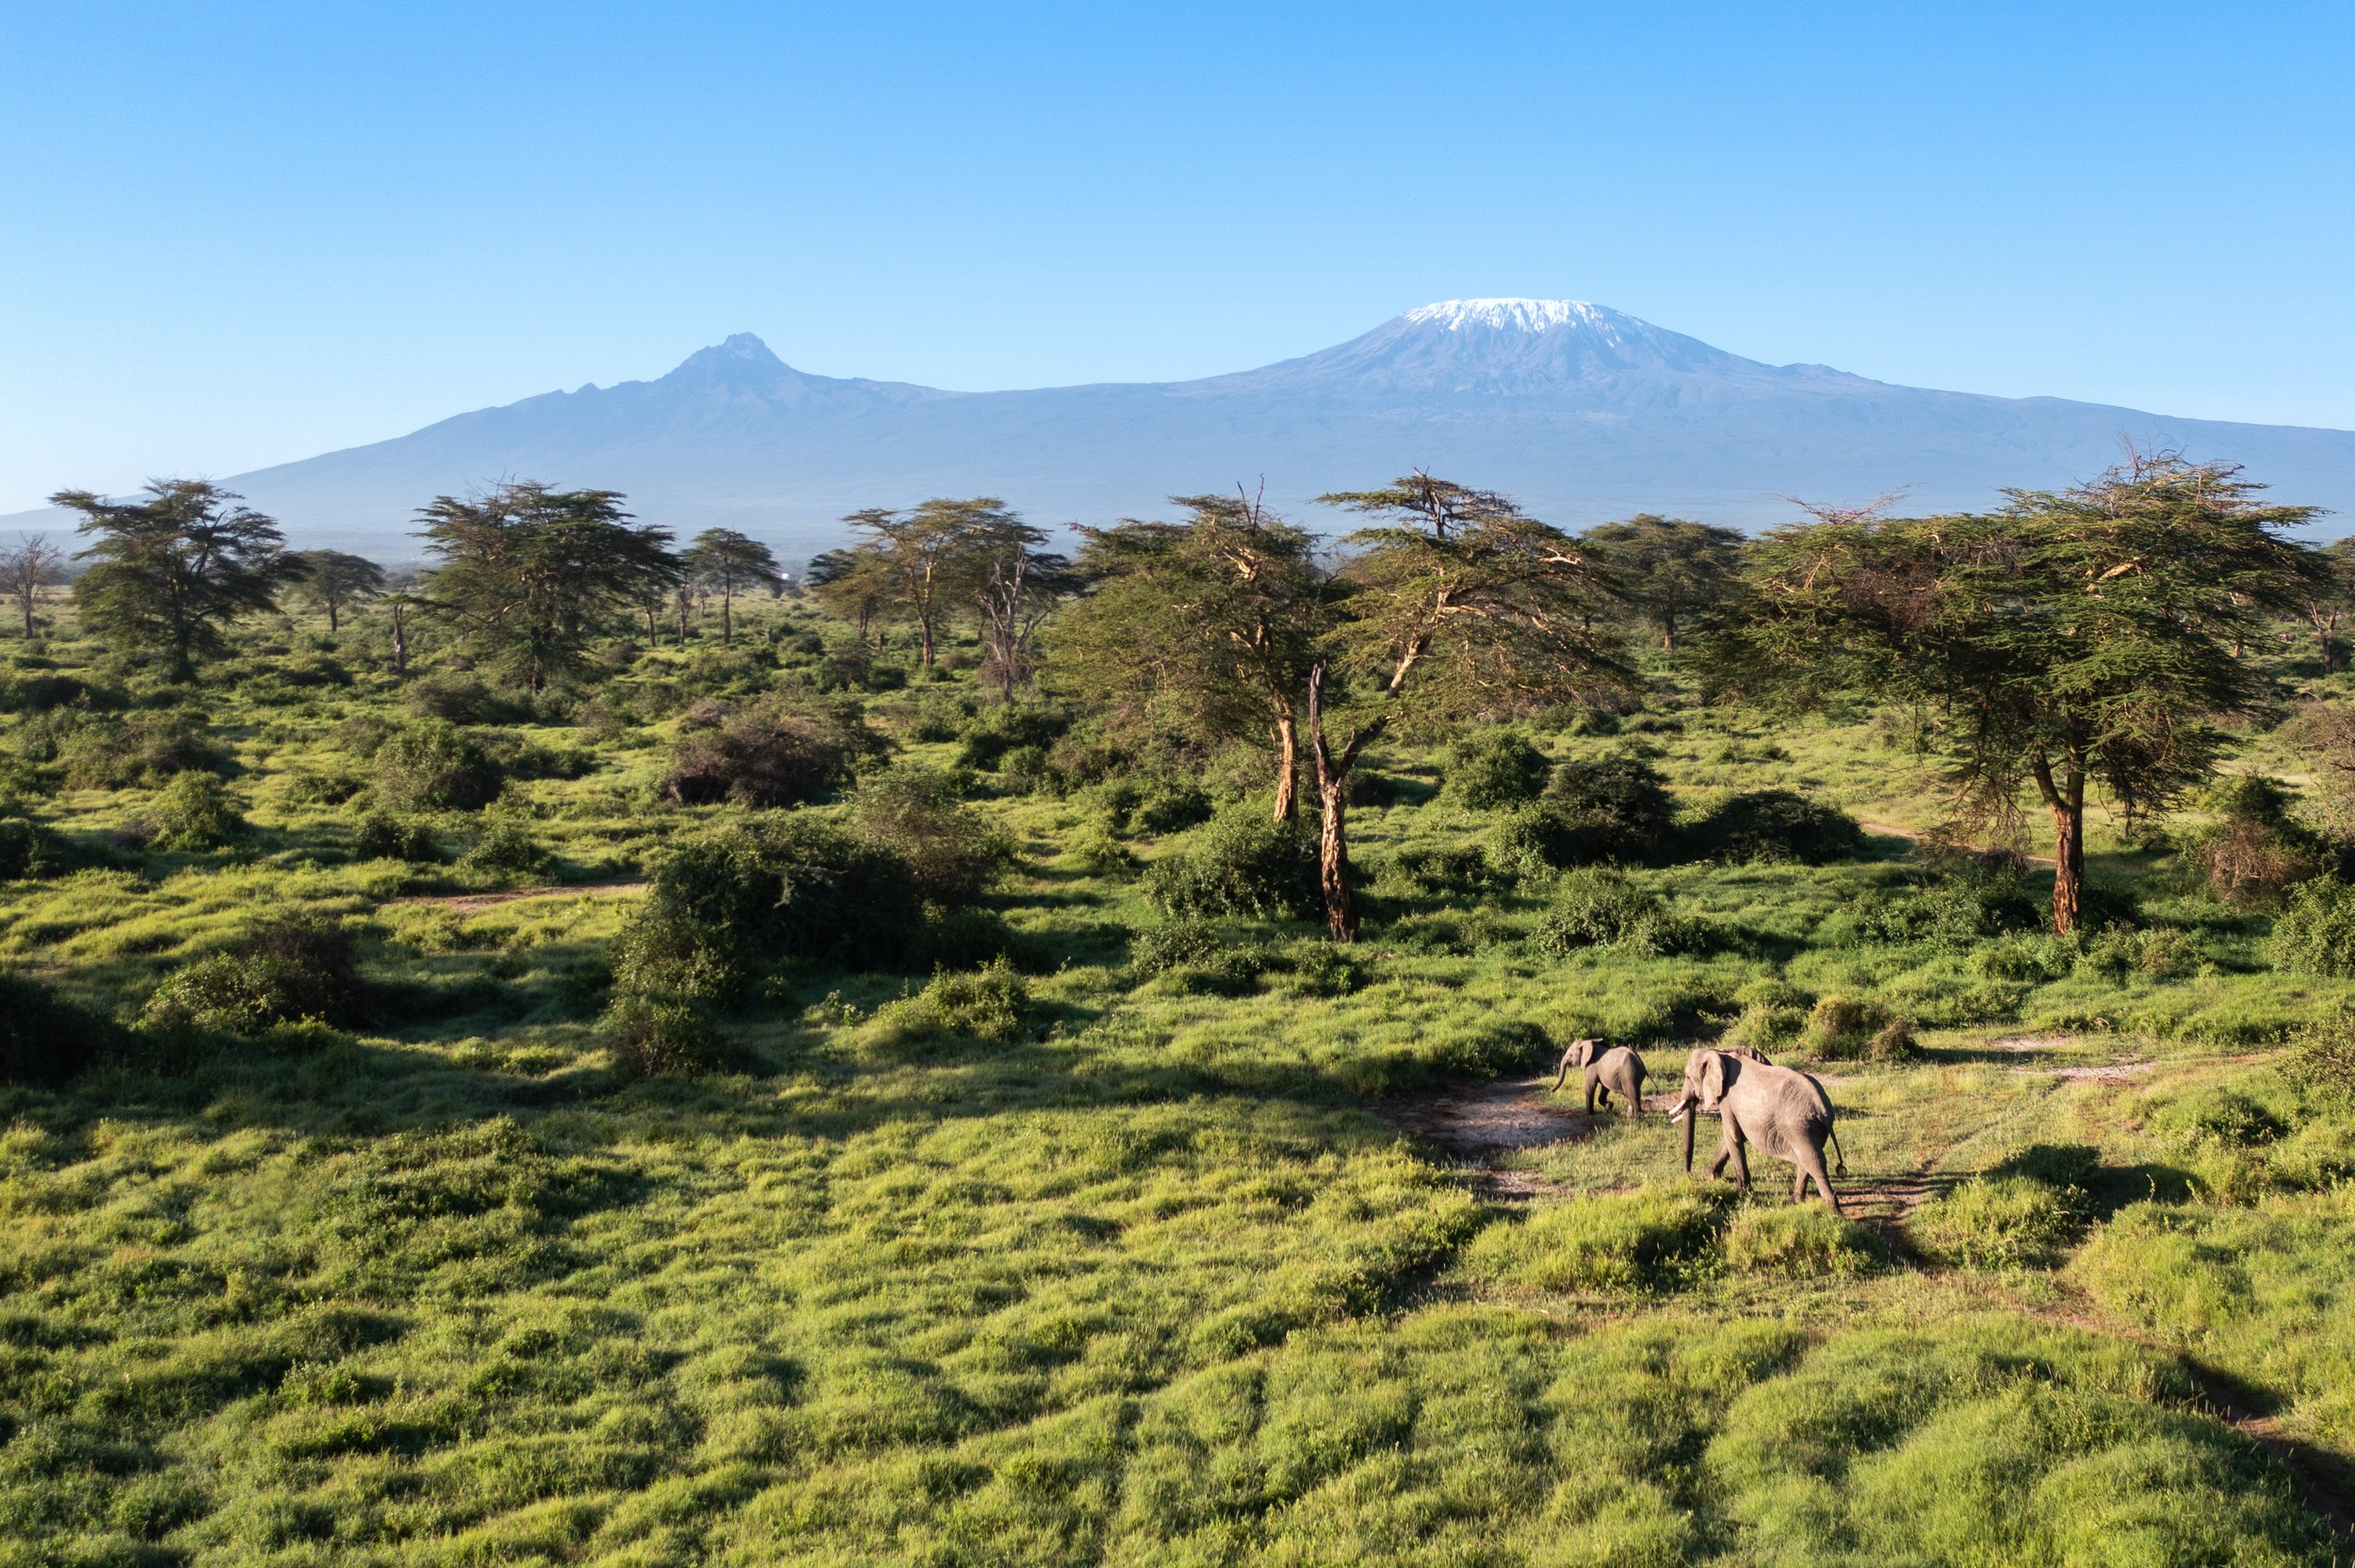 Angama Amboseli - Kimana Sanctuary - Mount Kilimanjaro.jpeg